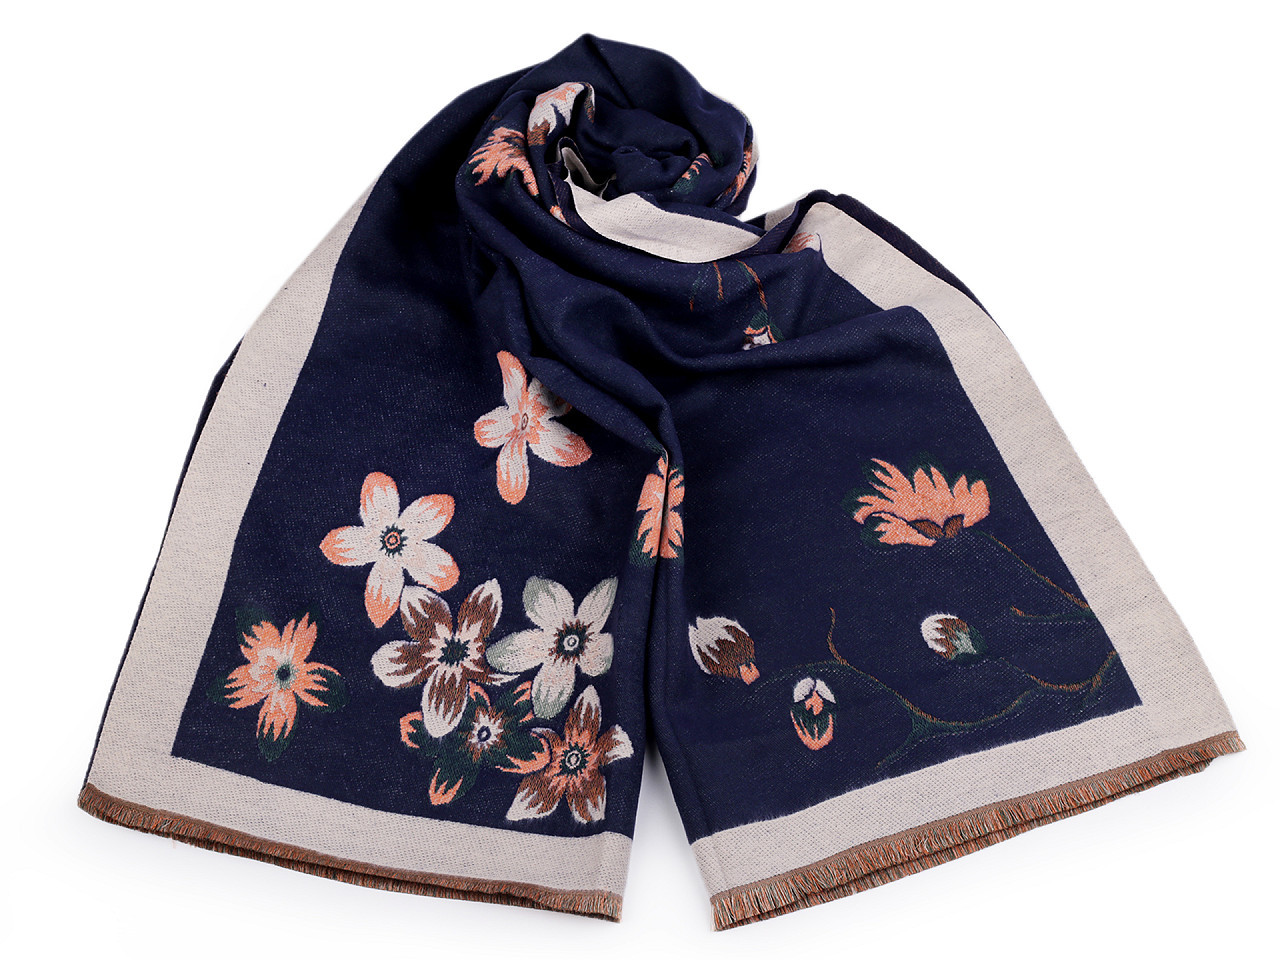 Šátek / šála typu kašmír s třásněmi, květy 65x190 cm, barva 9 modrá tmavá béžová světlá